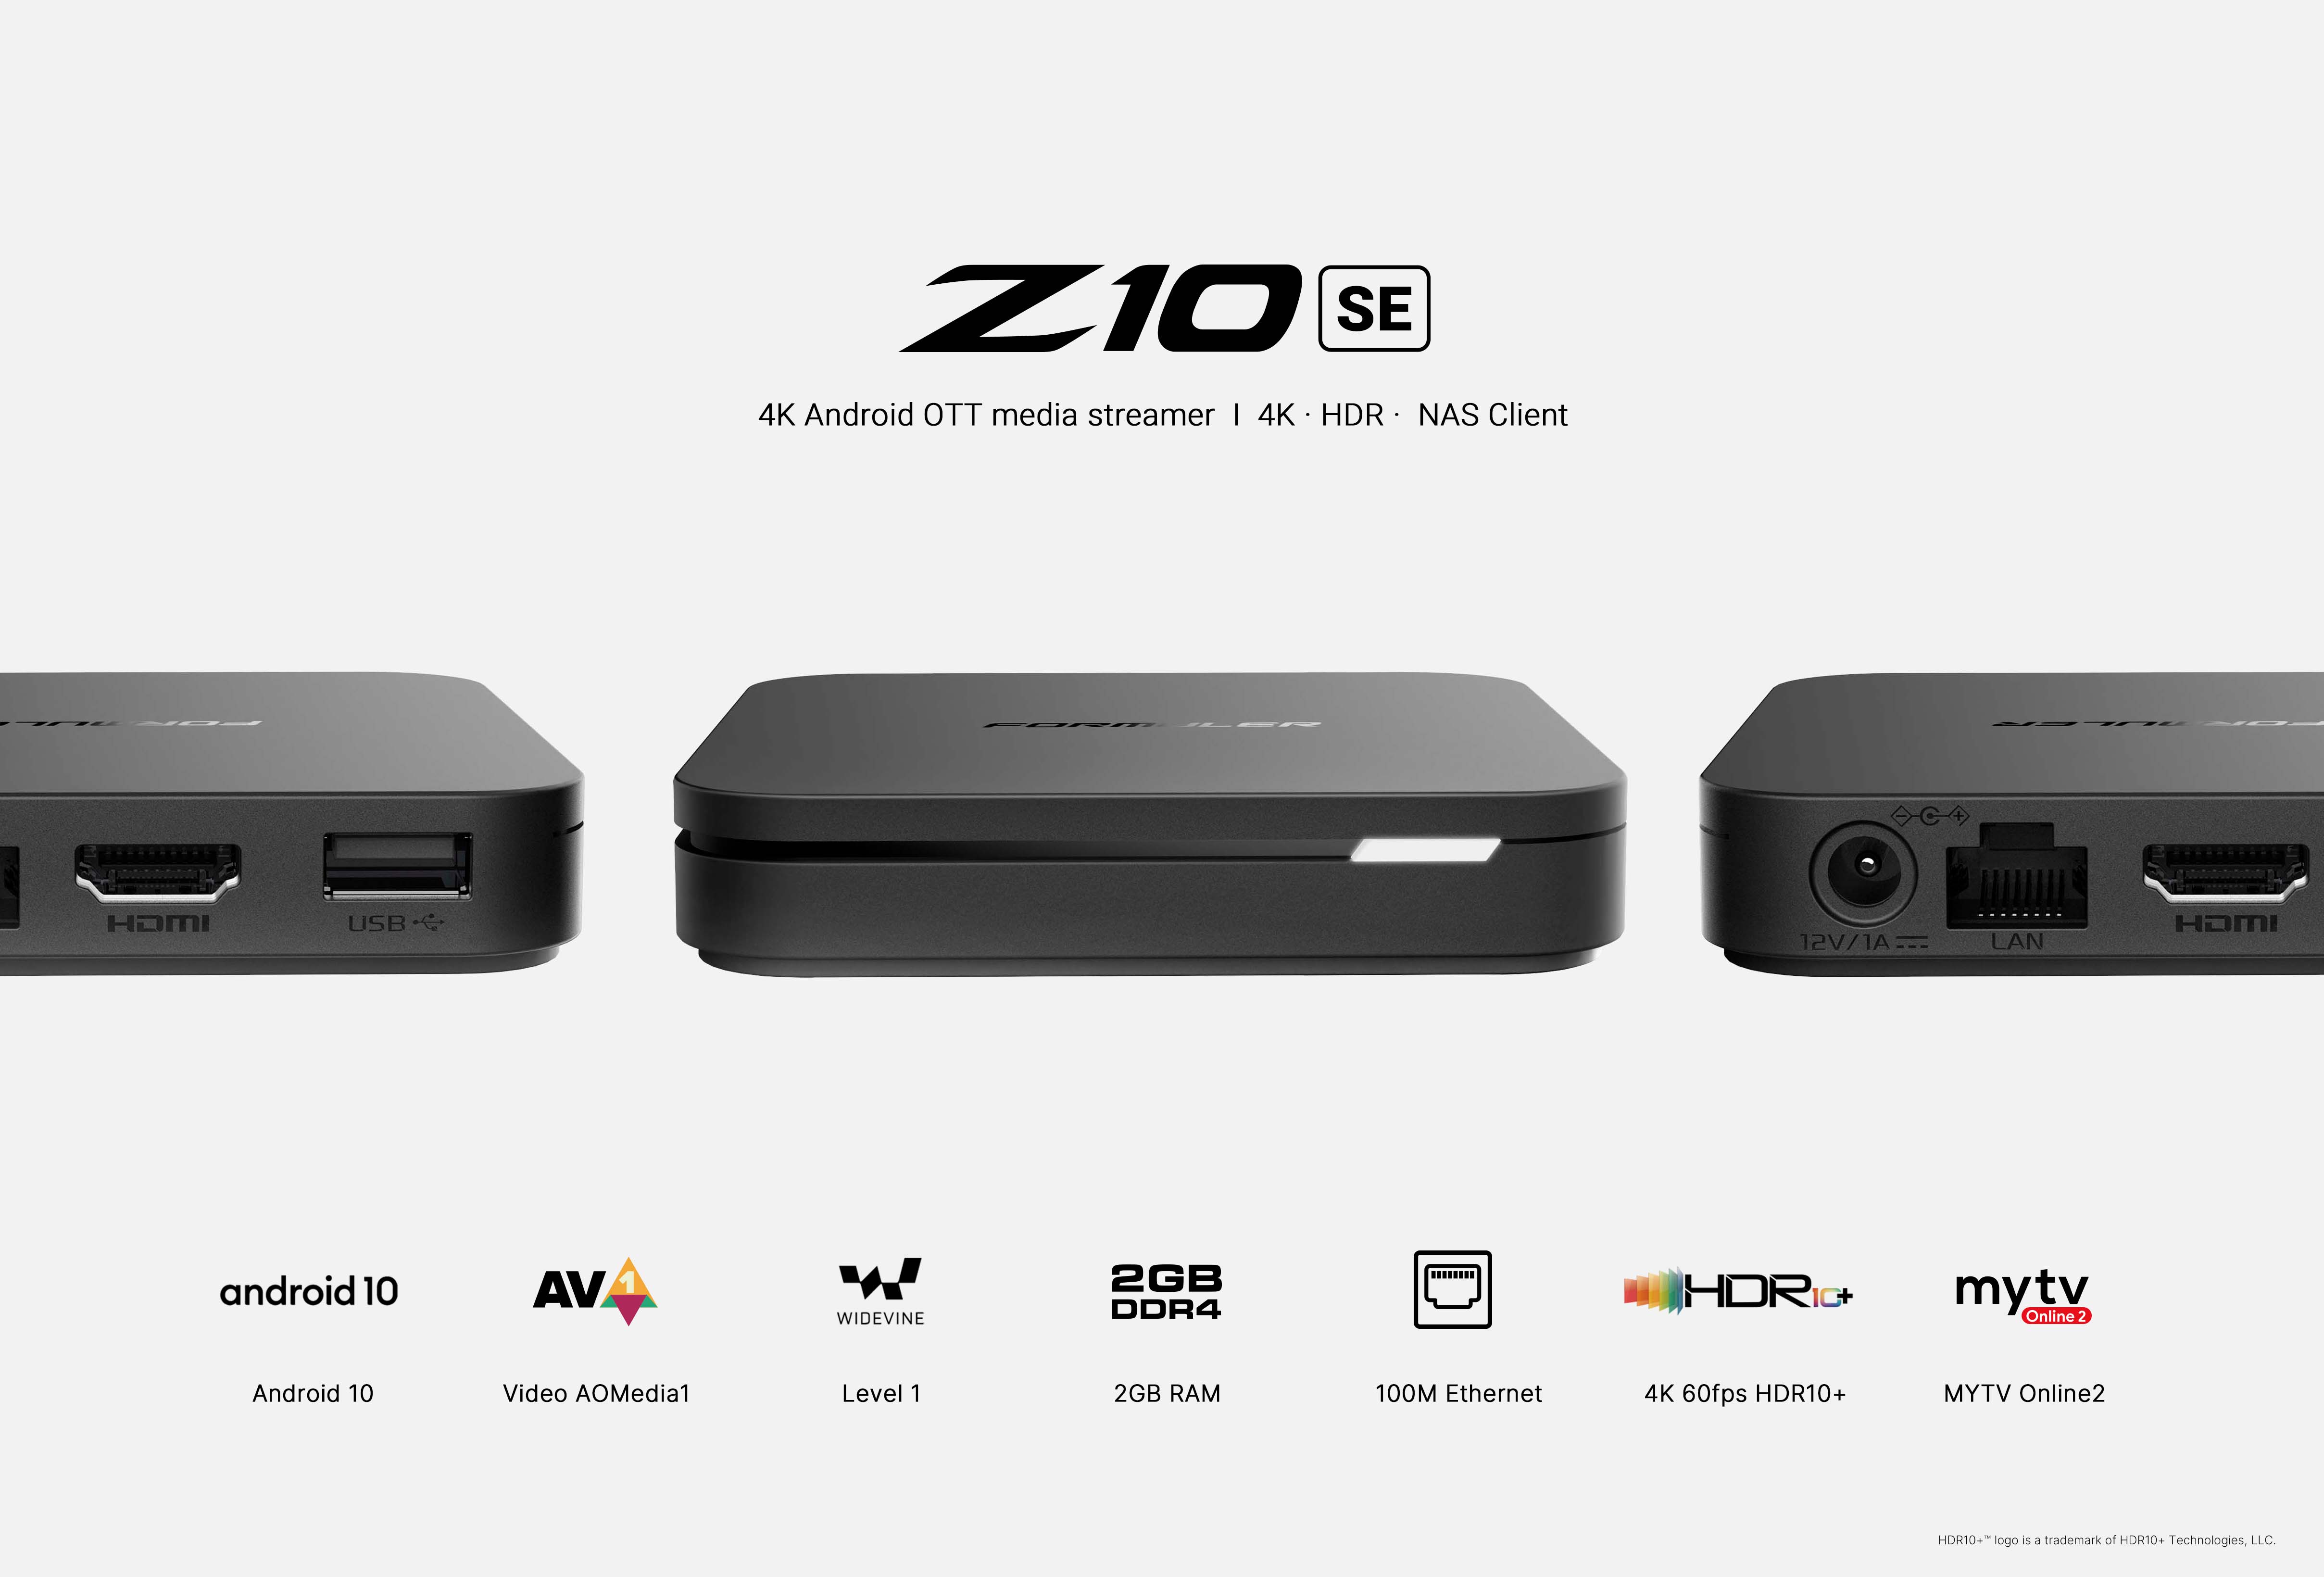 Formuler Z10 SE UHD 4K Android Media Streamer IPTV Receiver with